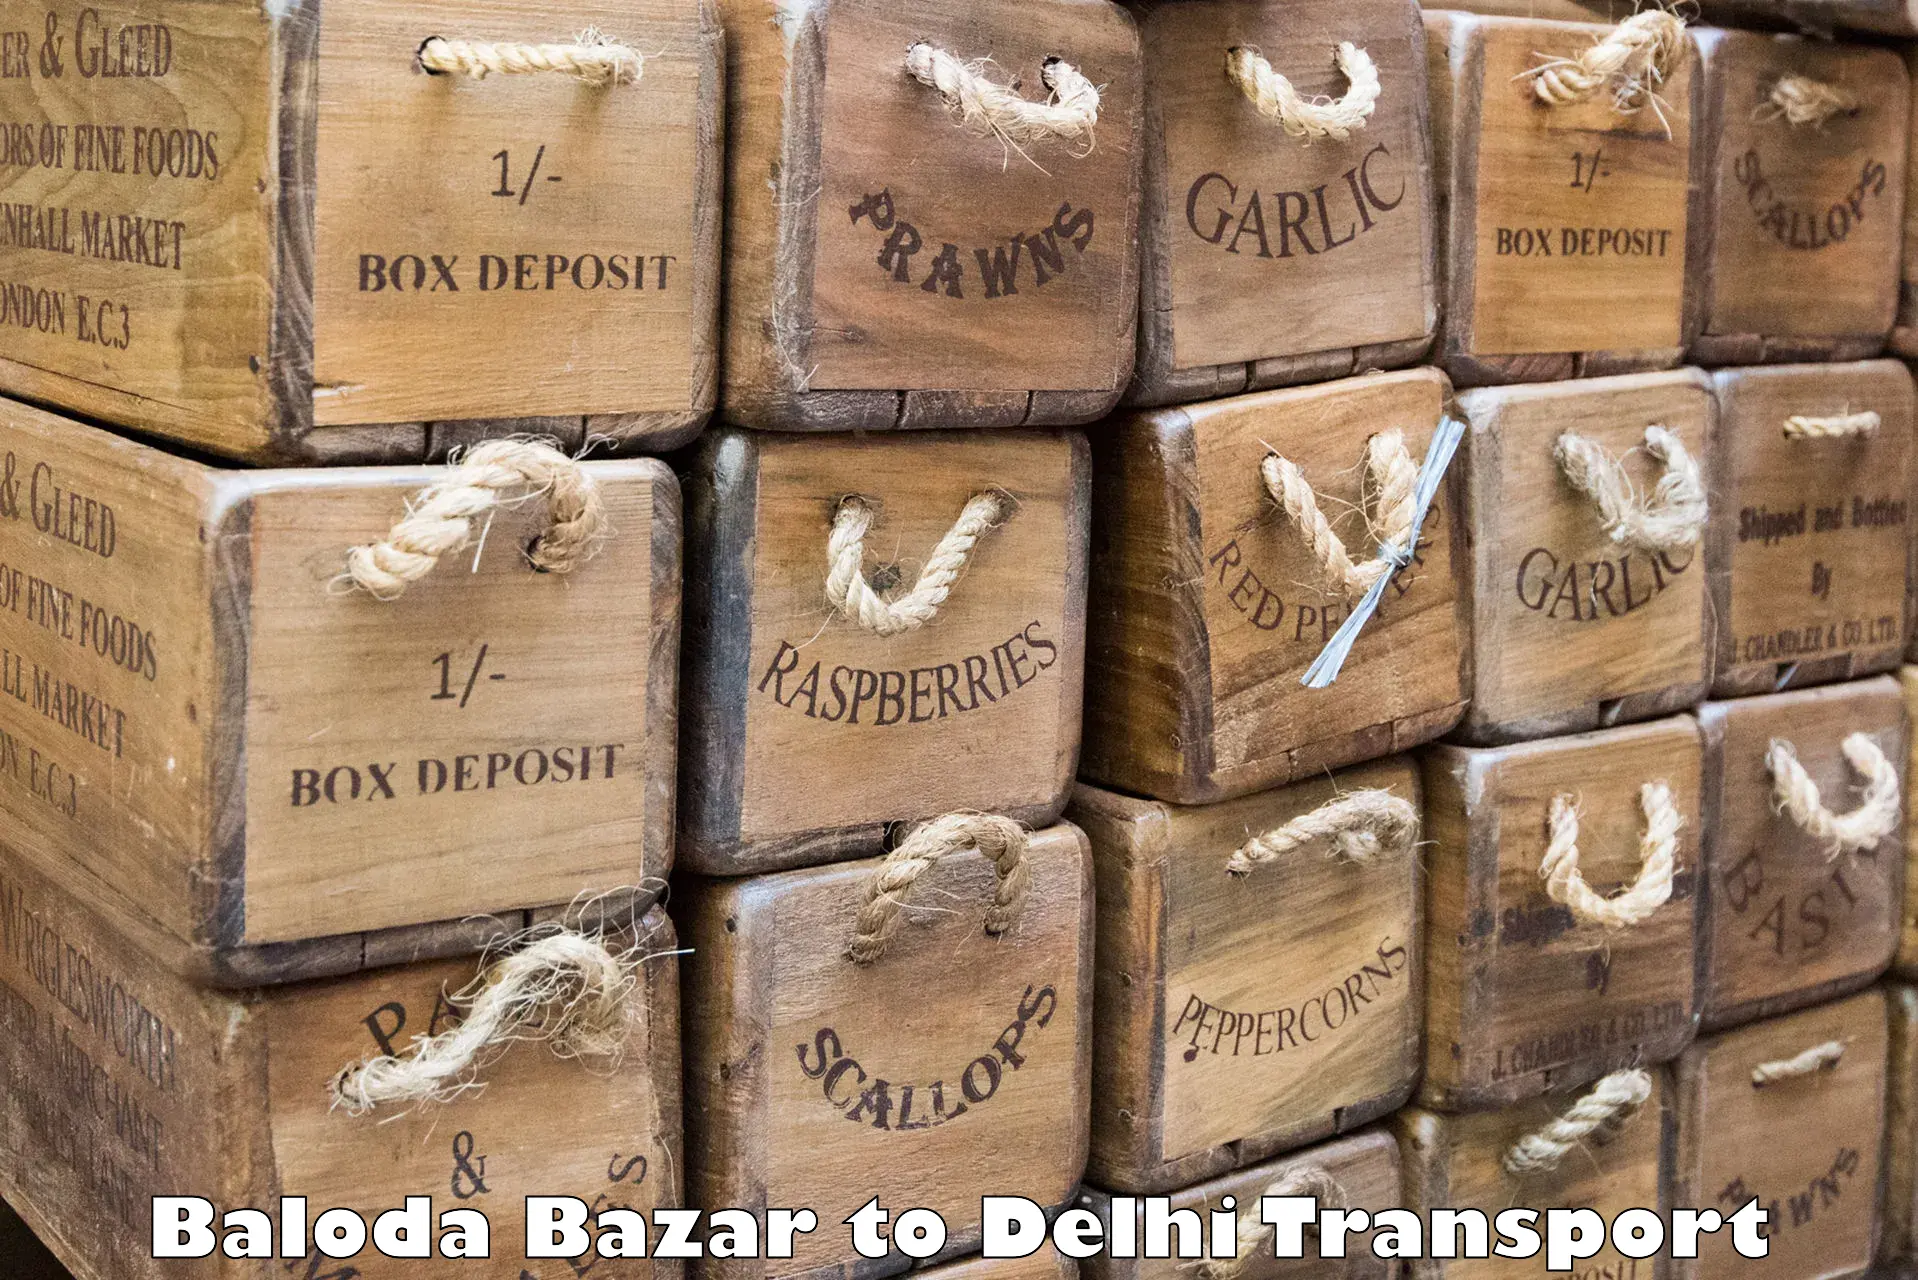 Container transportation services Baloda Bazar to Sarojini Nagar